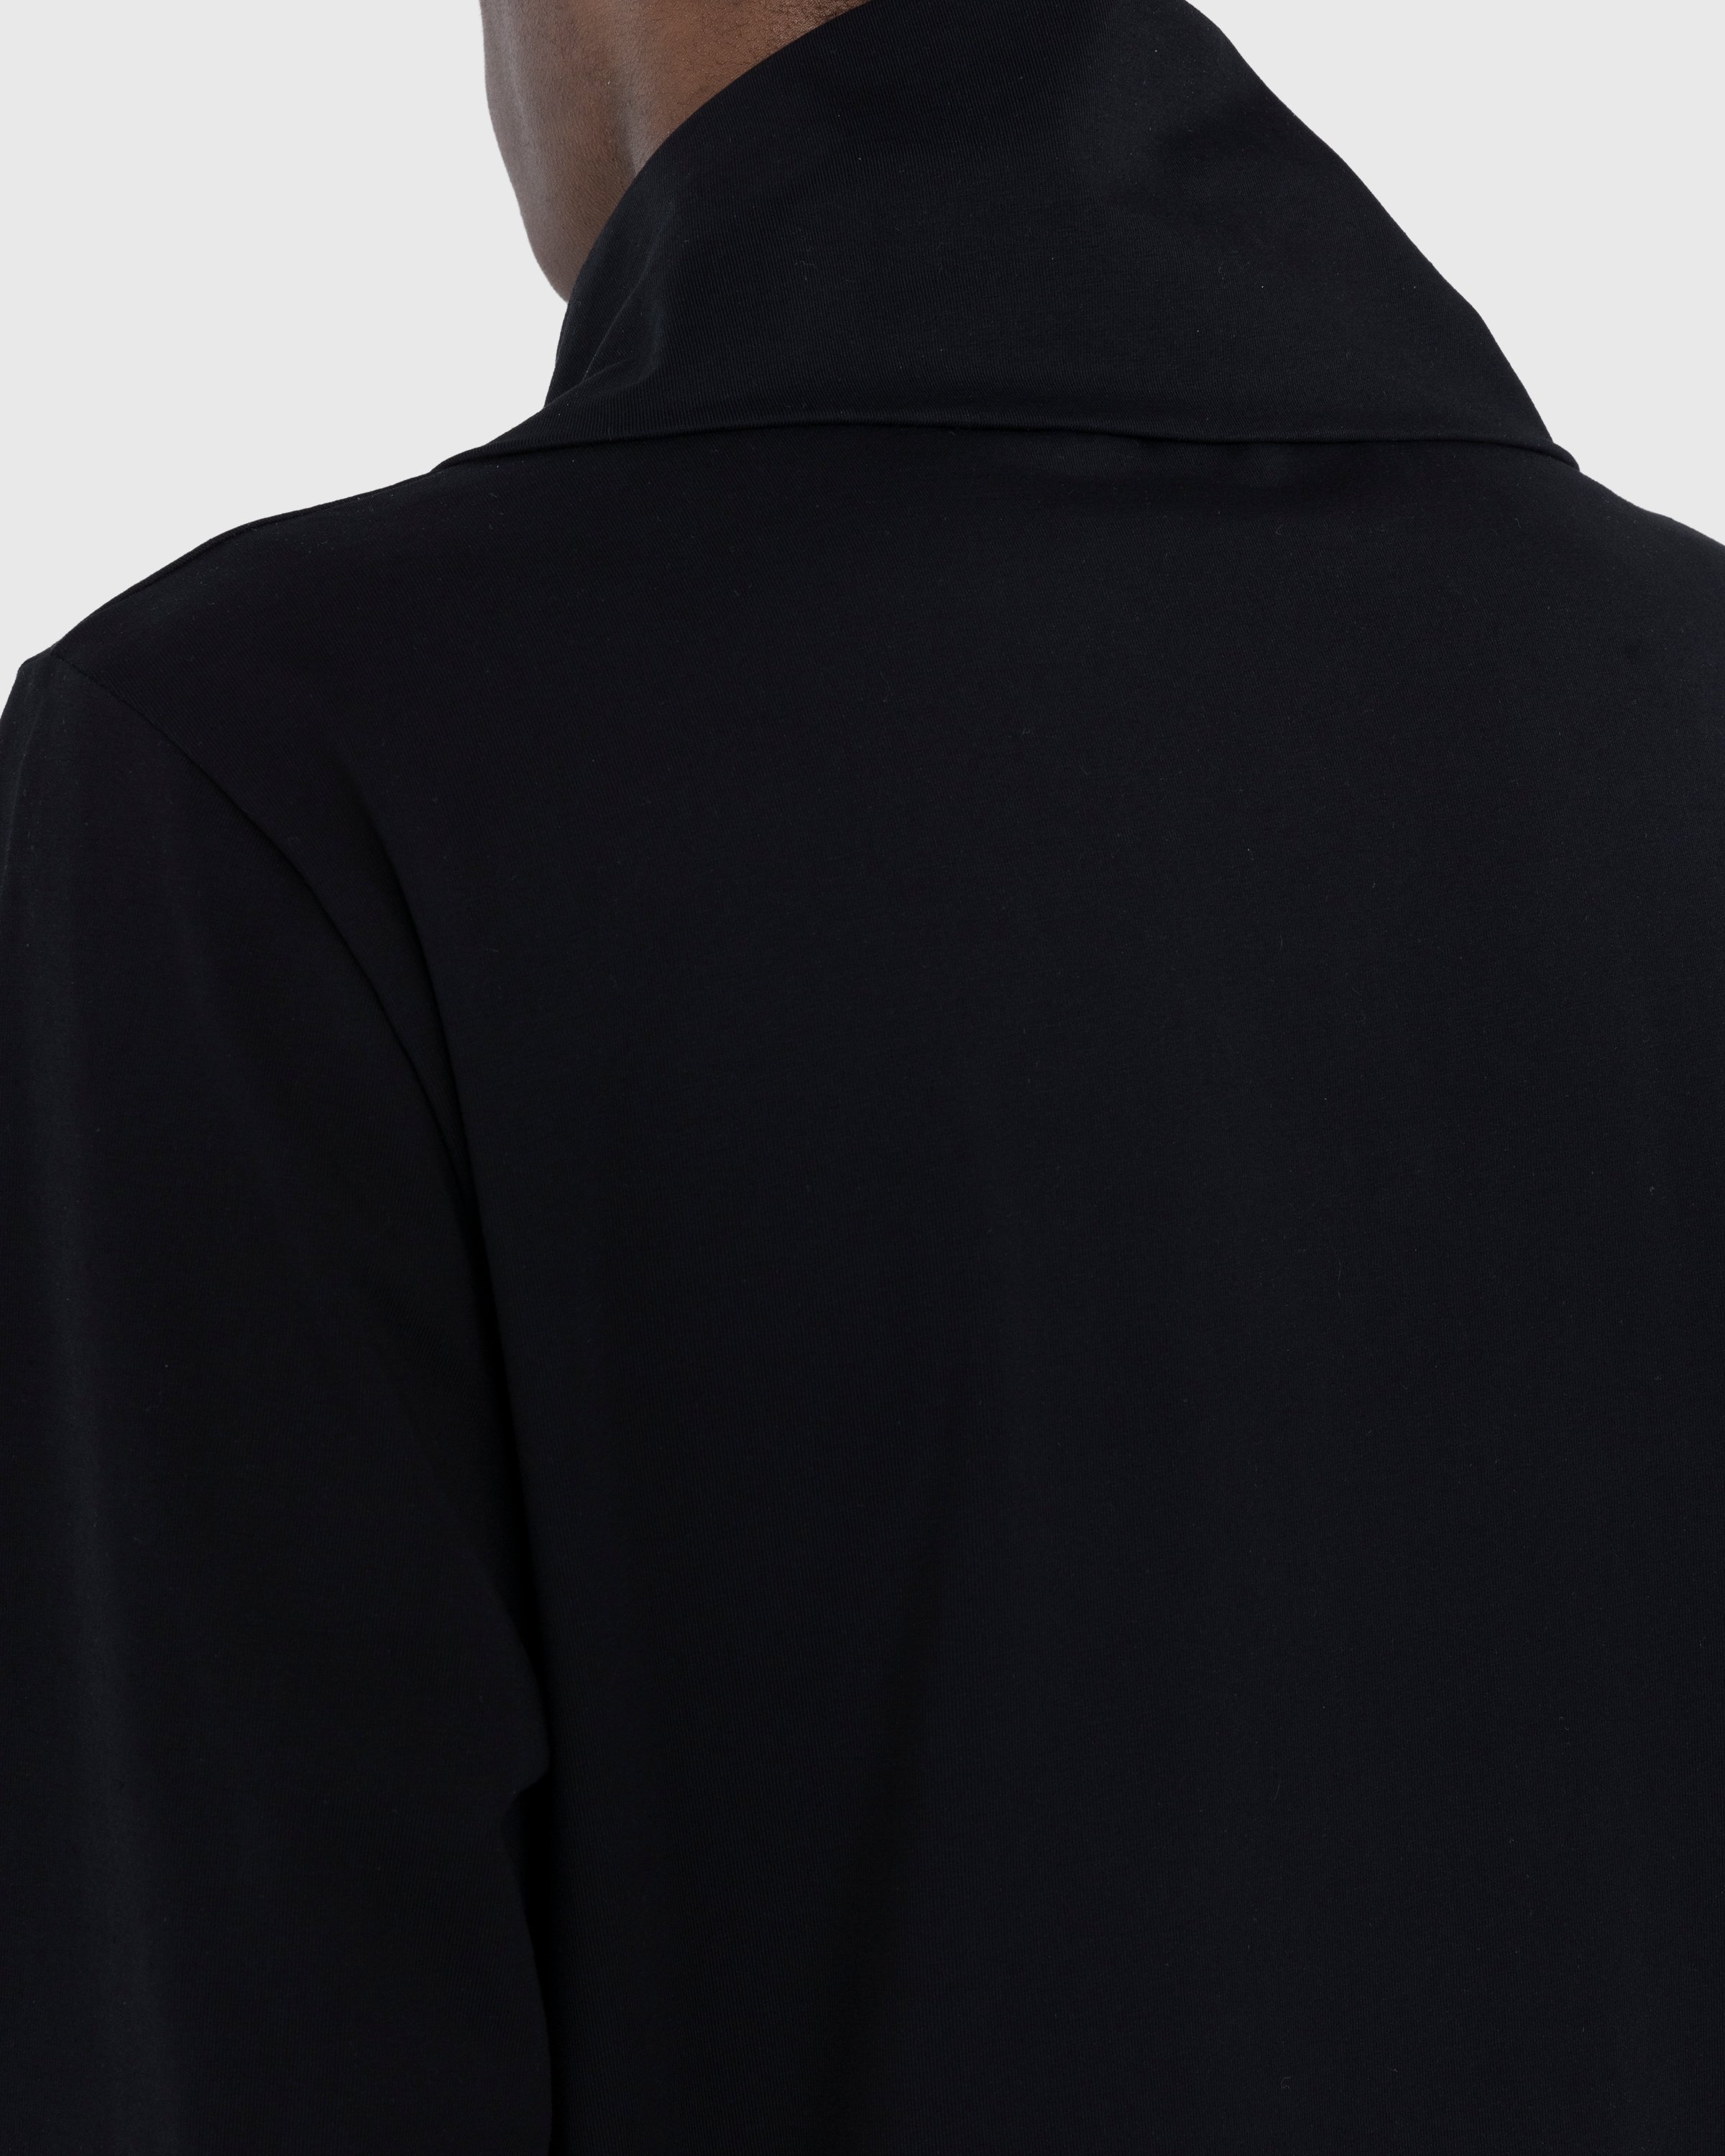 Jil Sander - Zip-Up Longsleeve Black - Clothing - Black - Image 8